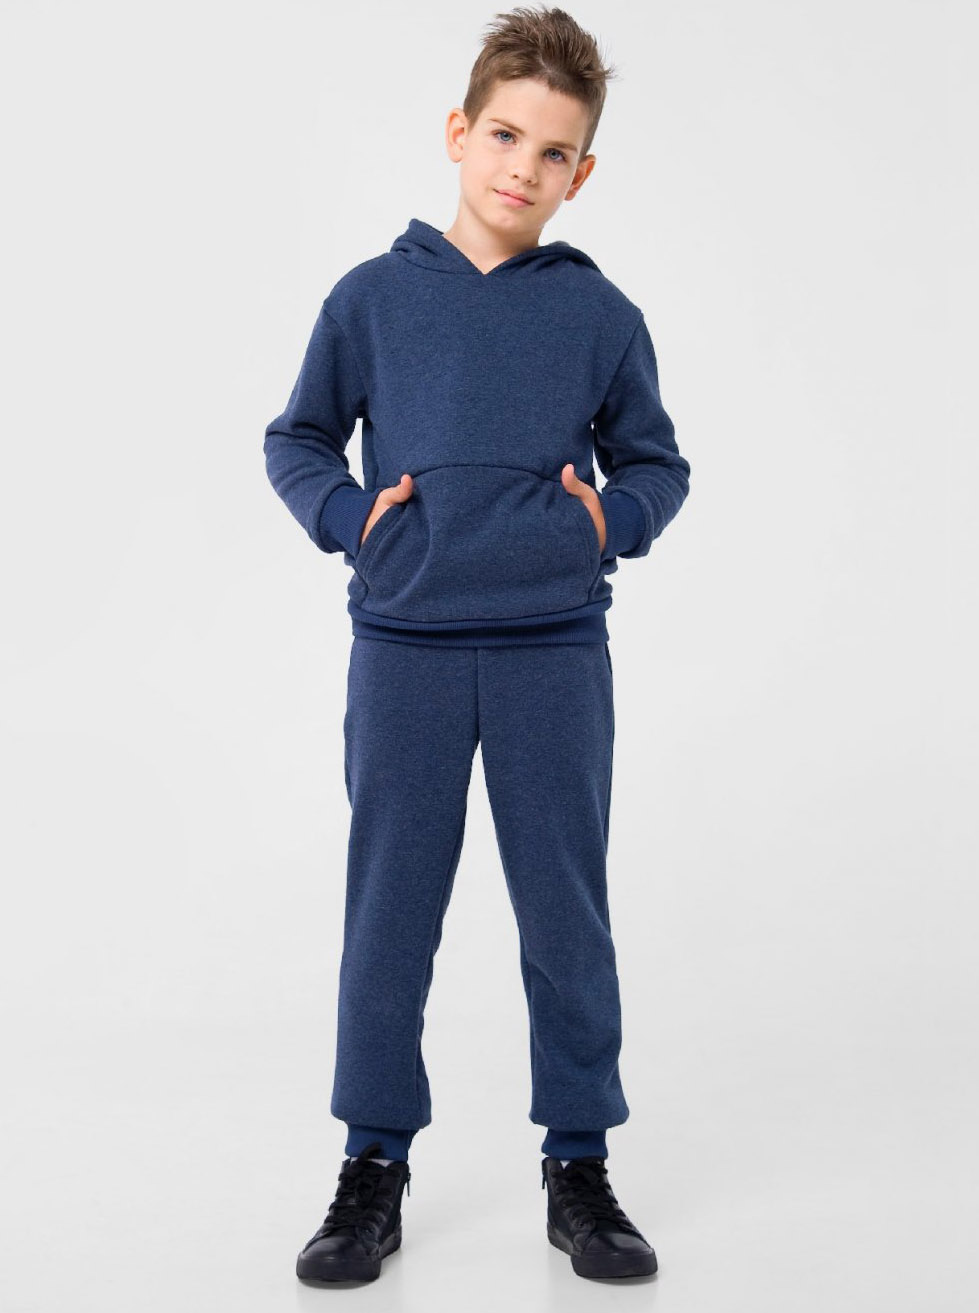 Утеплені штани для хлопчика Smil сині 115446/115447 - ціна